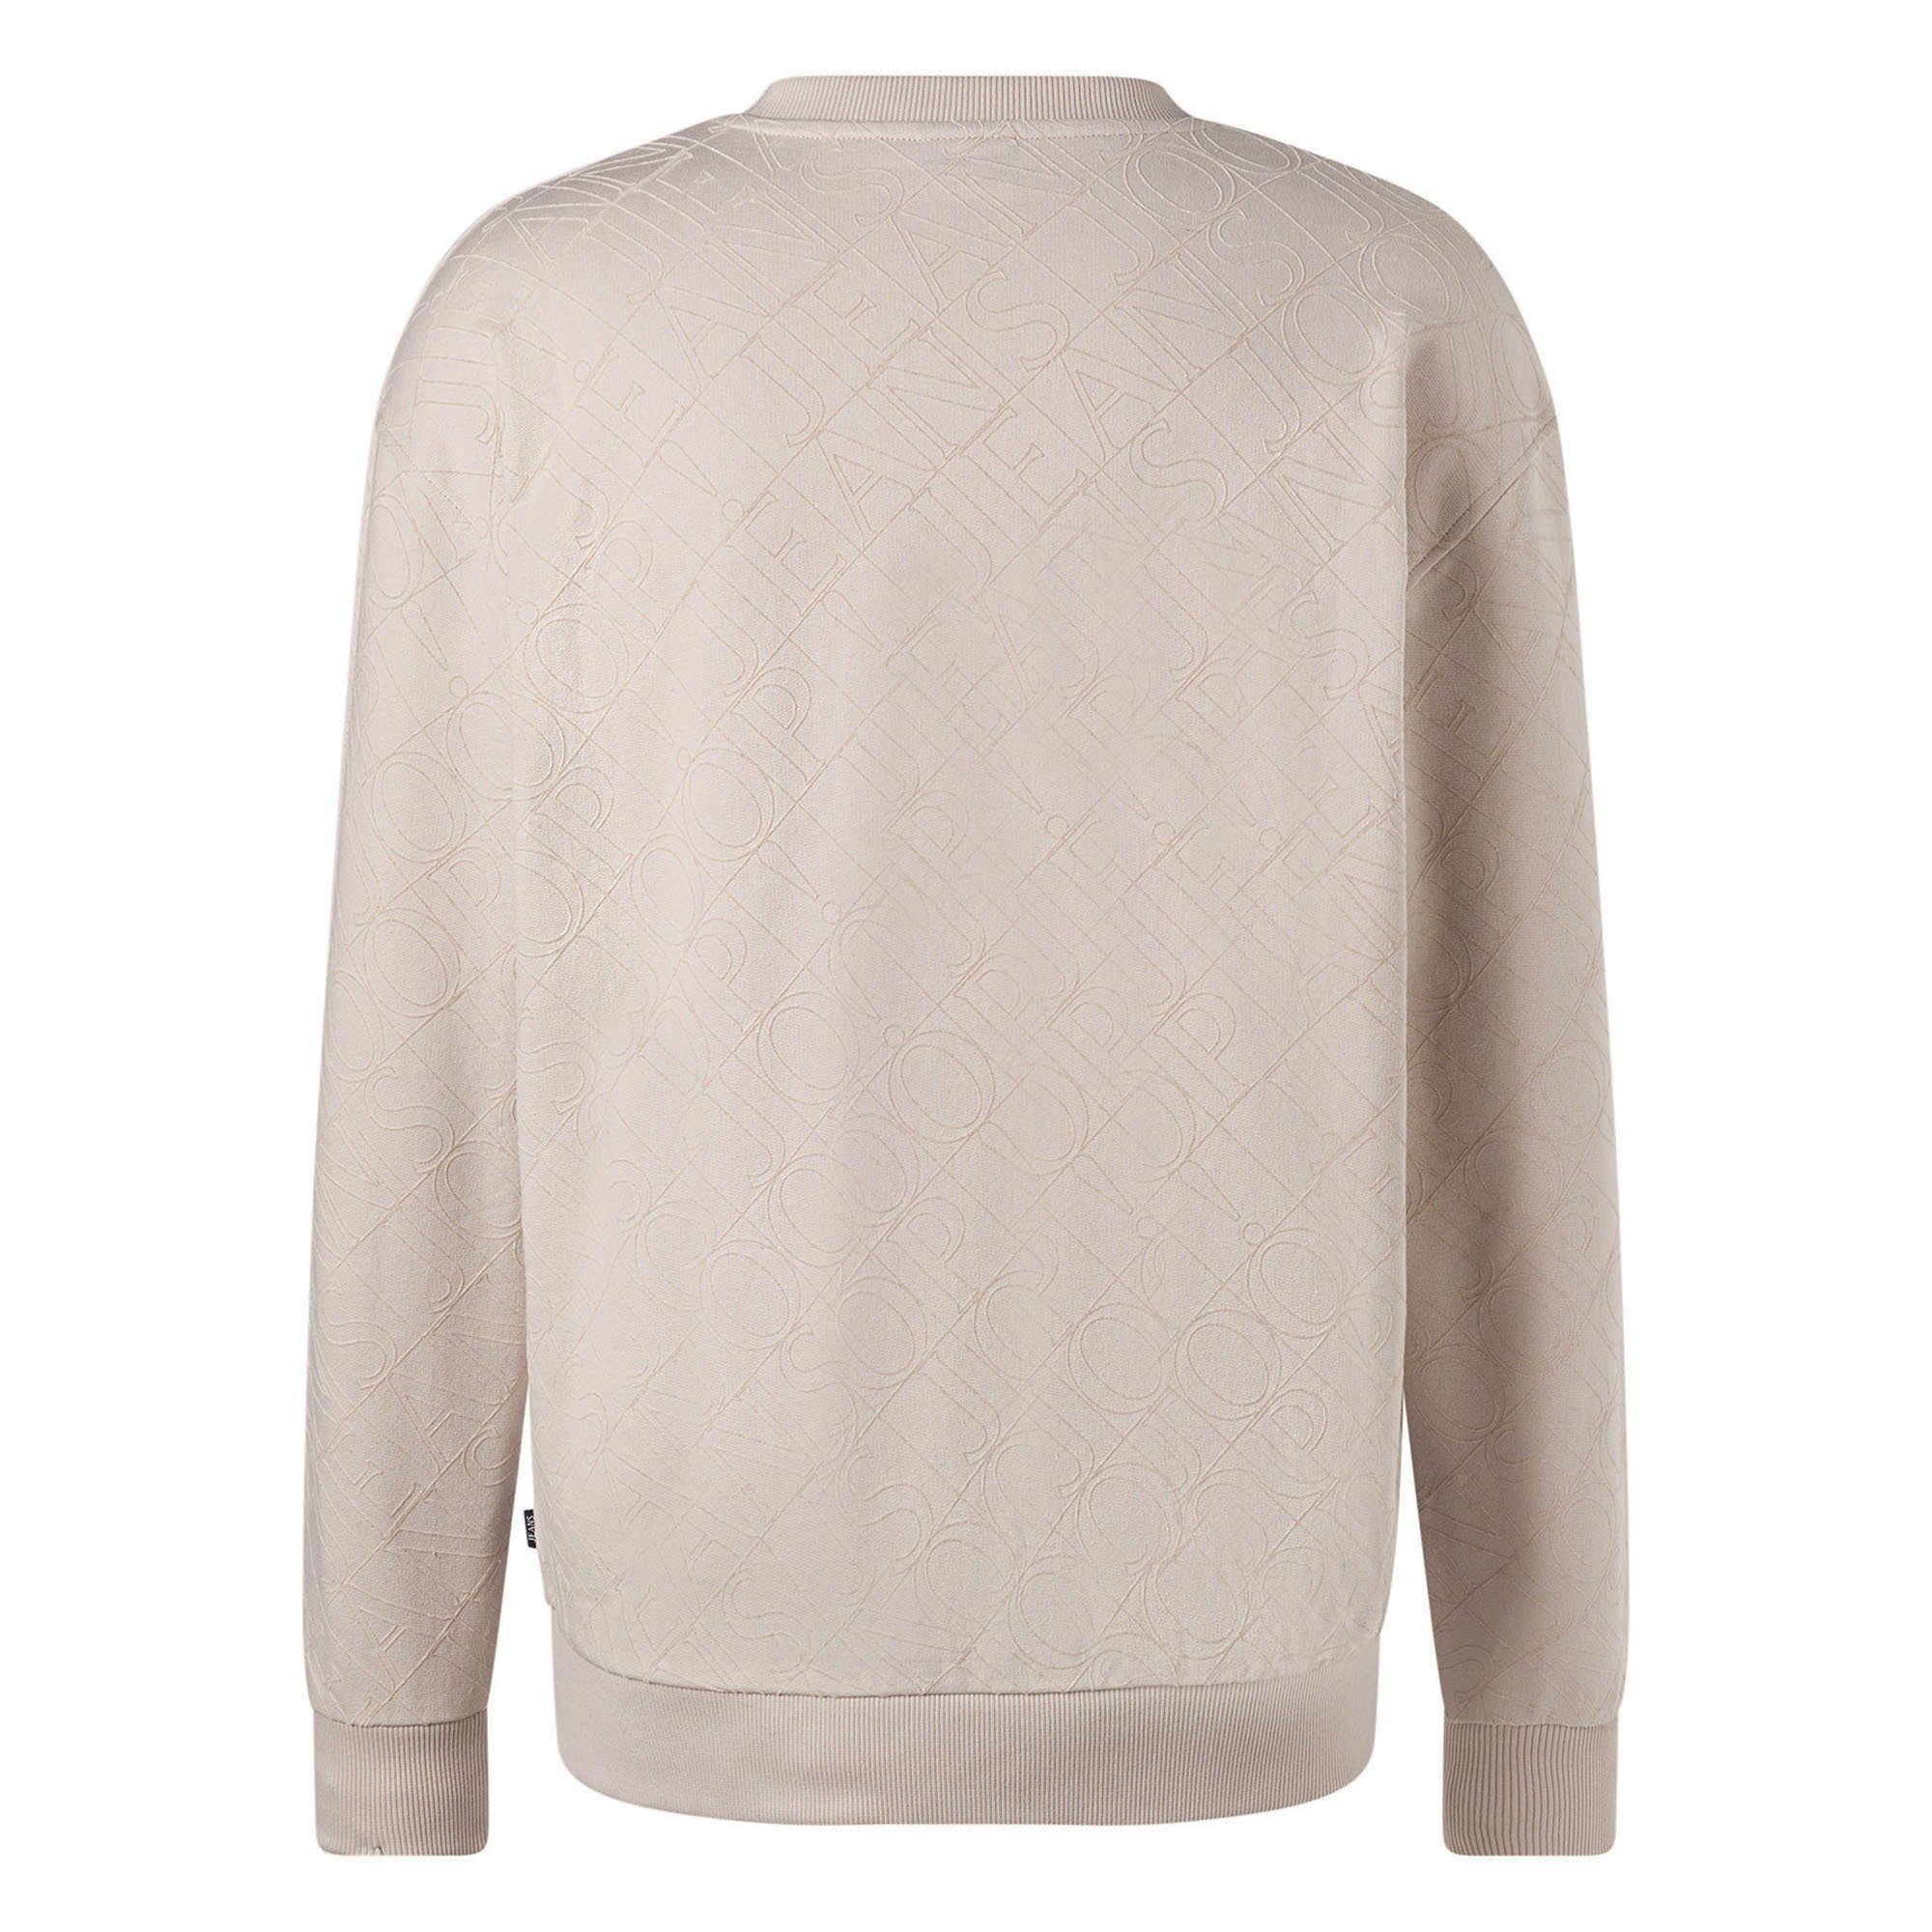 Joop (Open Sweatshirt Rundhals Sweatshirt Cayetano, Sweater, Herren - Jeans White) Natur